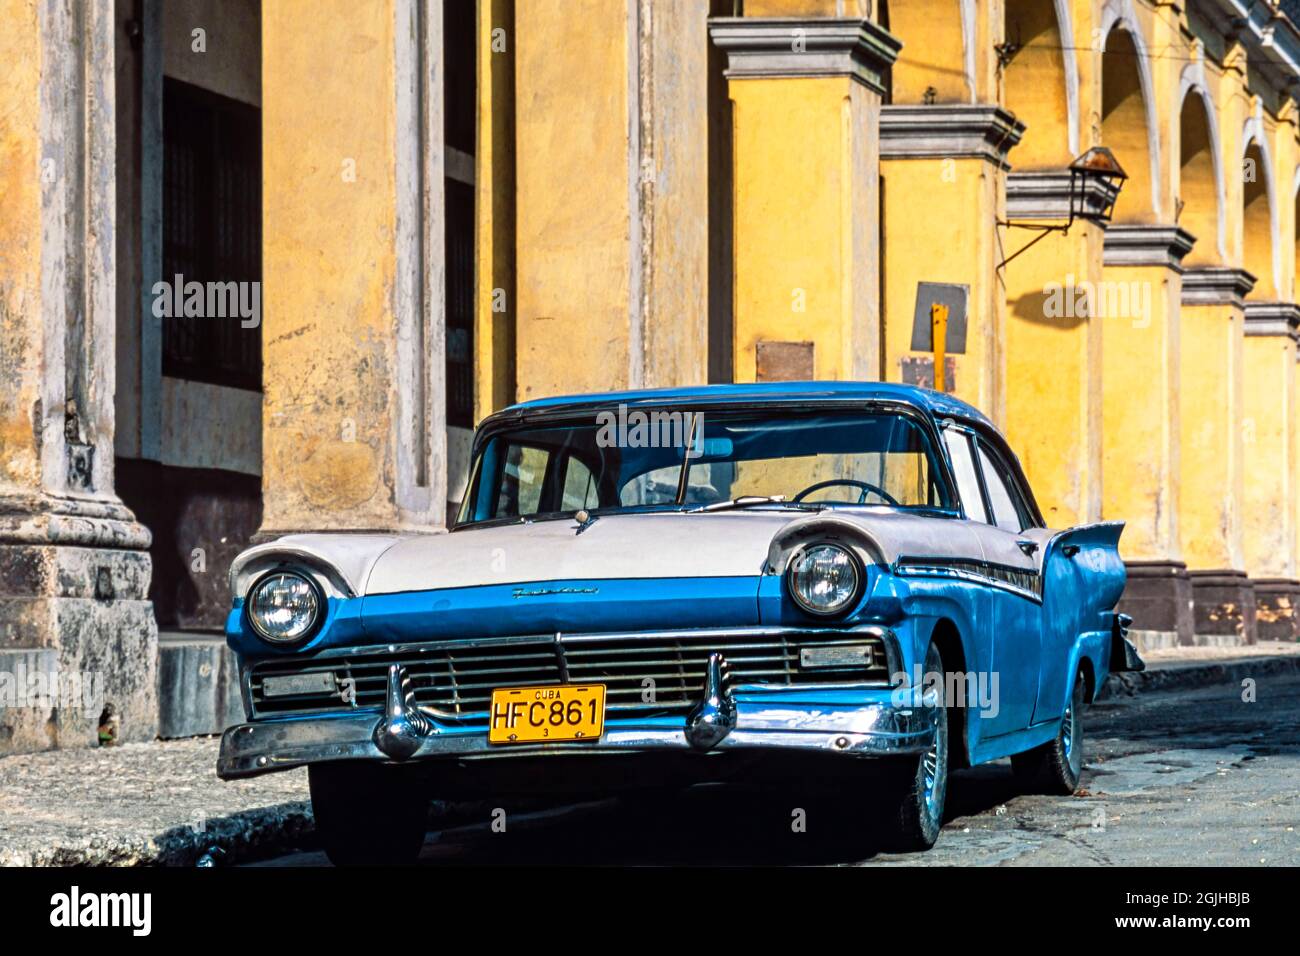 Classic American 1957 Ford Fairlane garée à l'extérieur du bâtiment colonial, la Havane, Cuba Banque D'Images